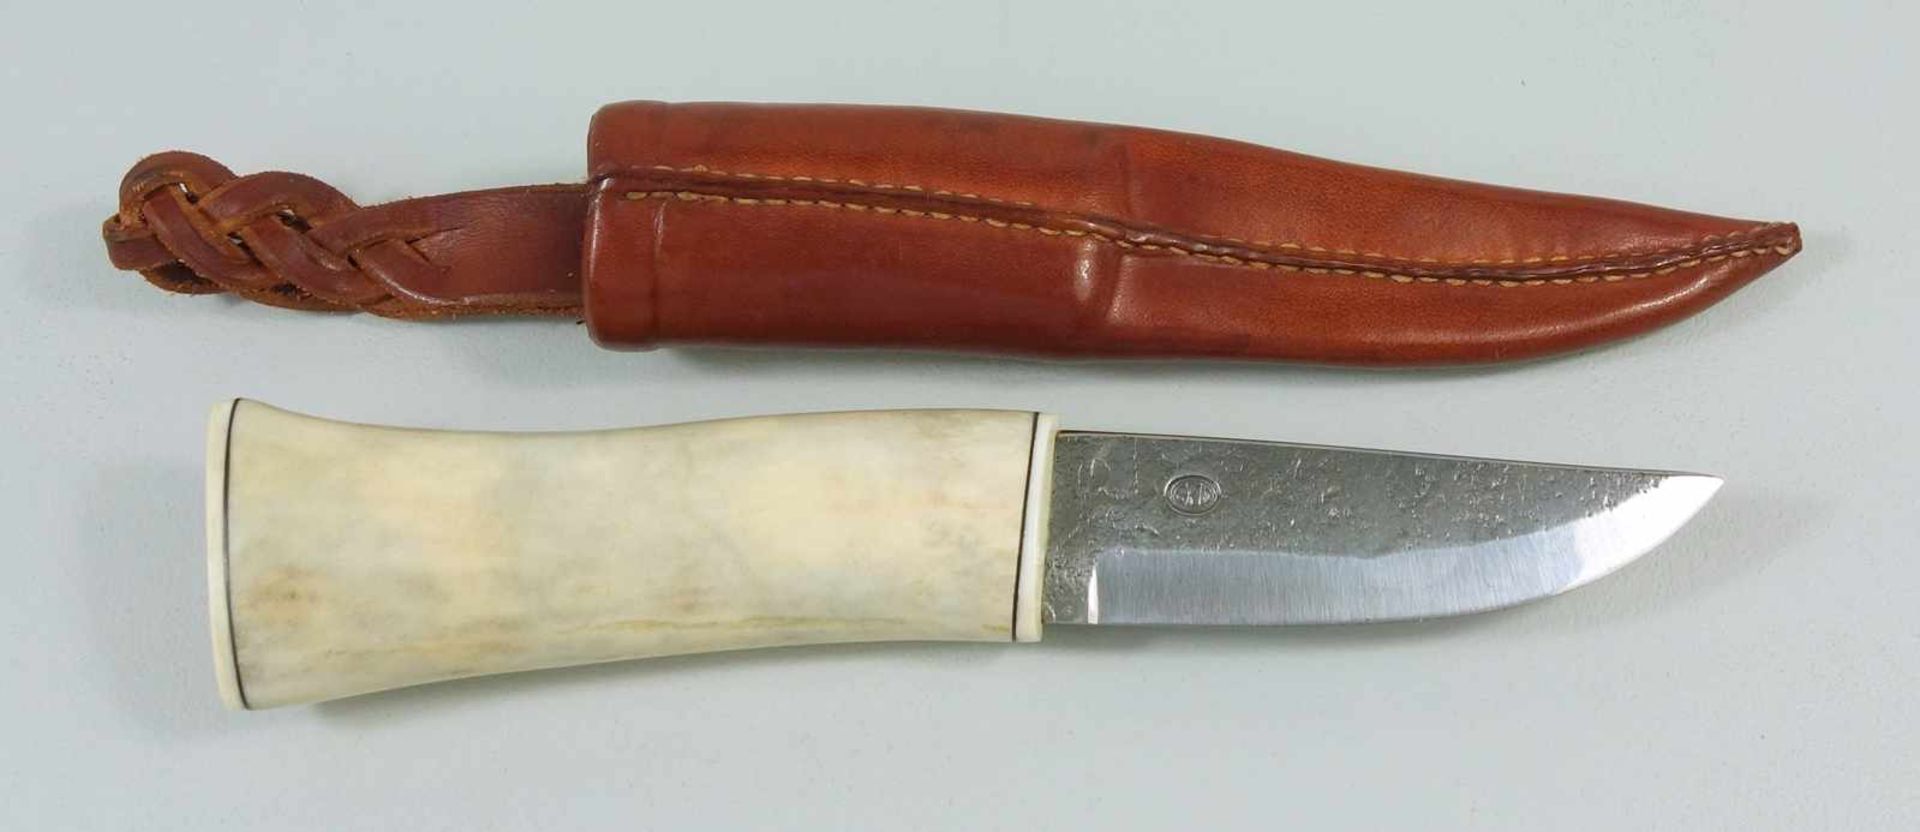 Jagdmesser mit Rentierknochen-Griff, wohl Finnland, Gesamt-L.19cm, Klingen-L.8,5cm, mit